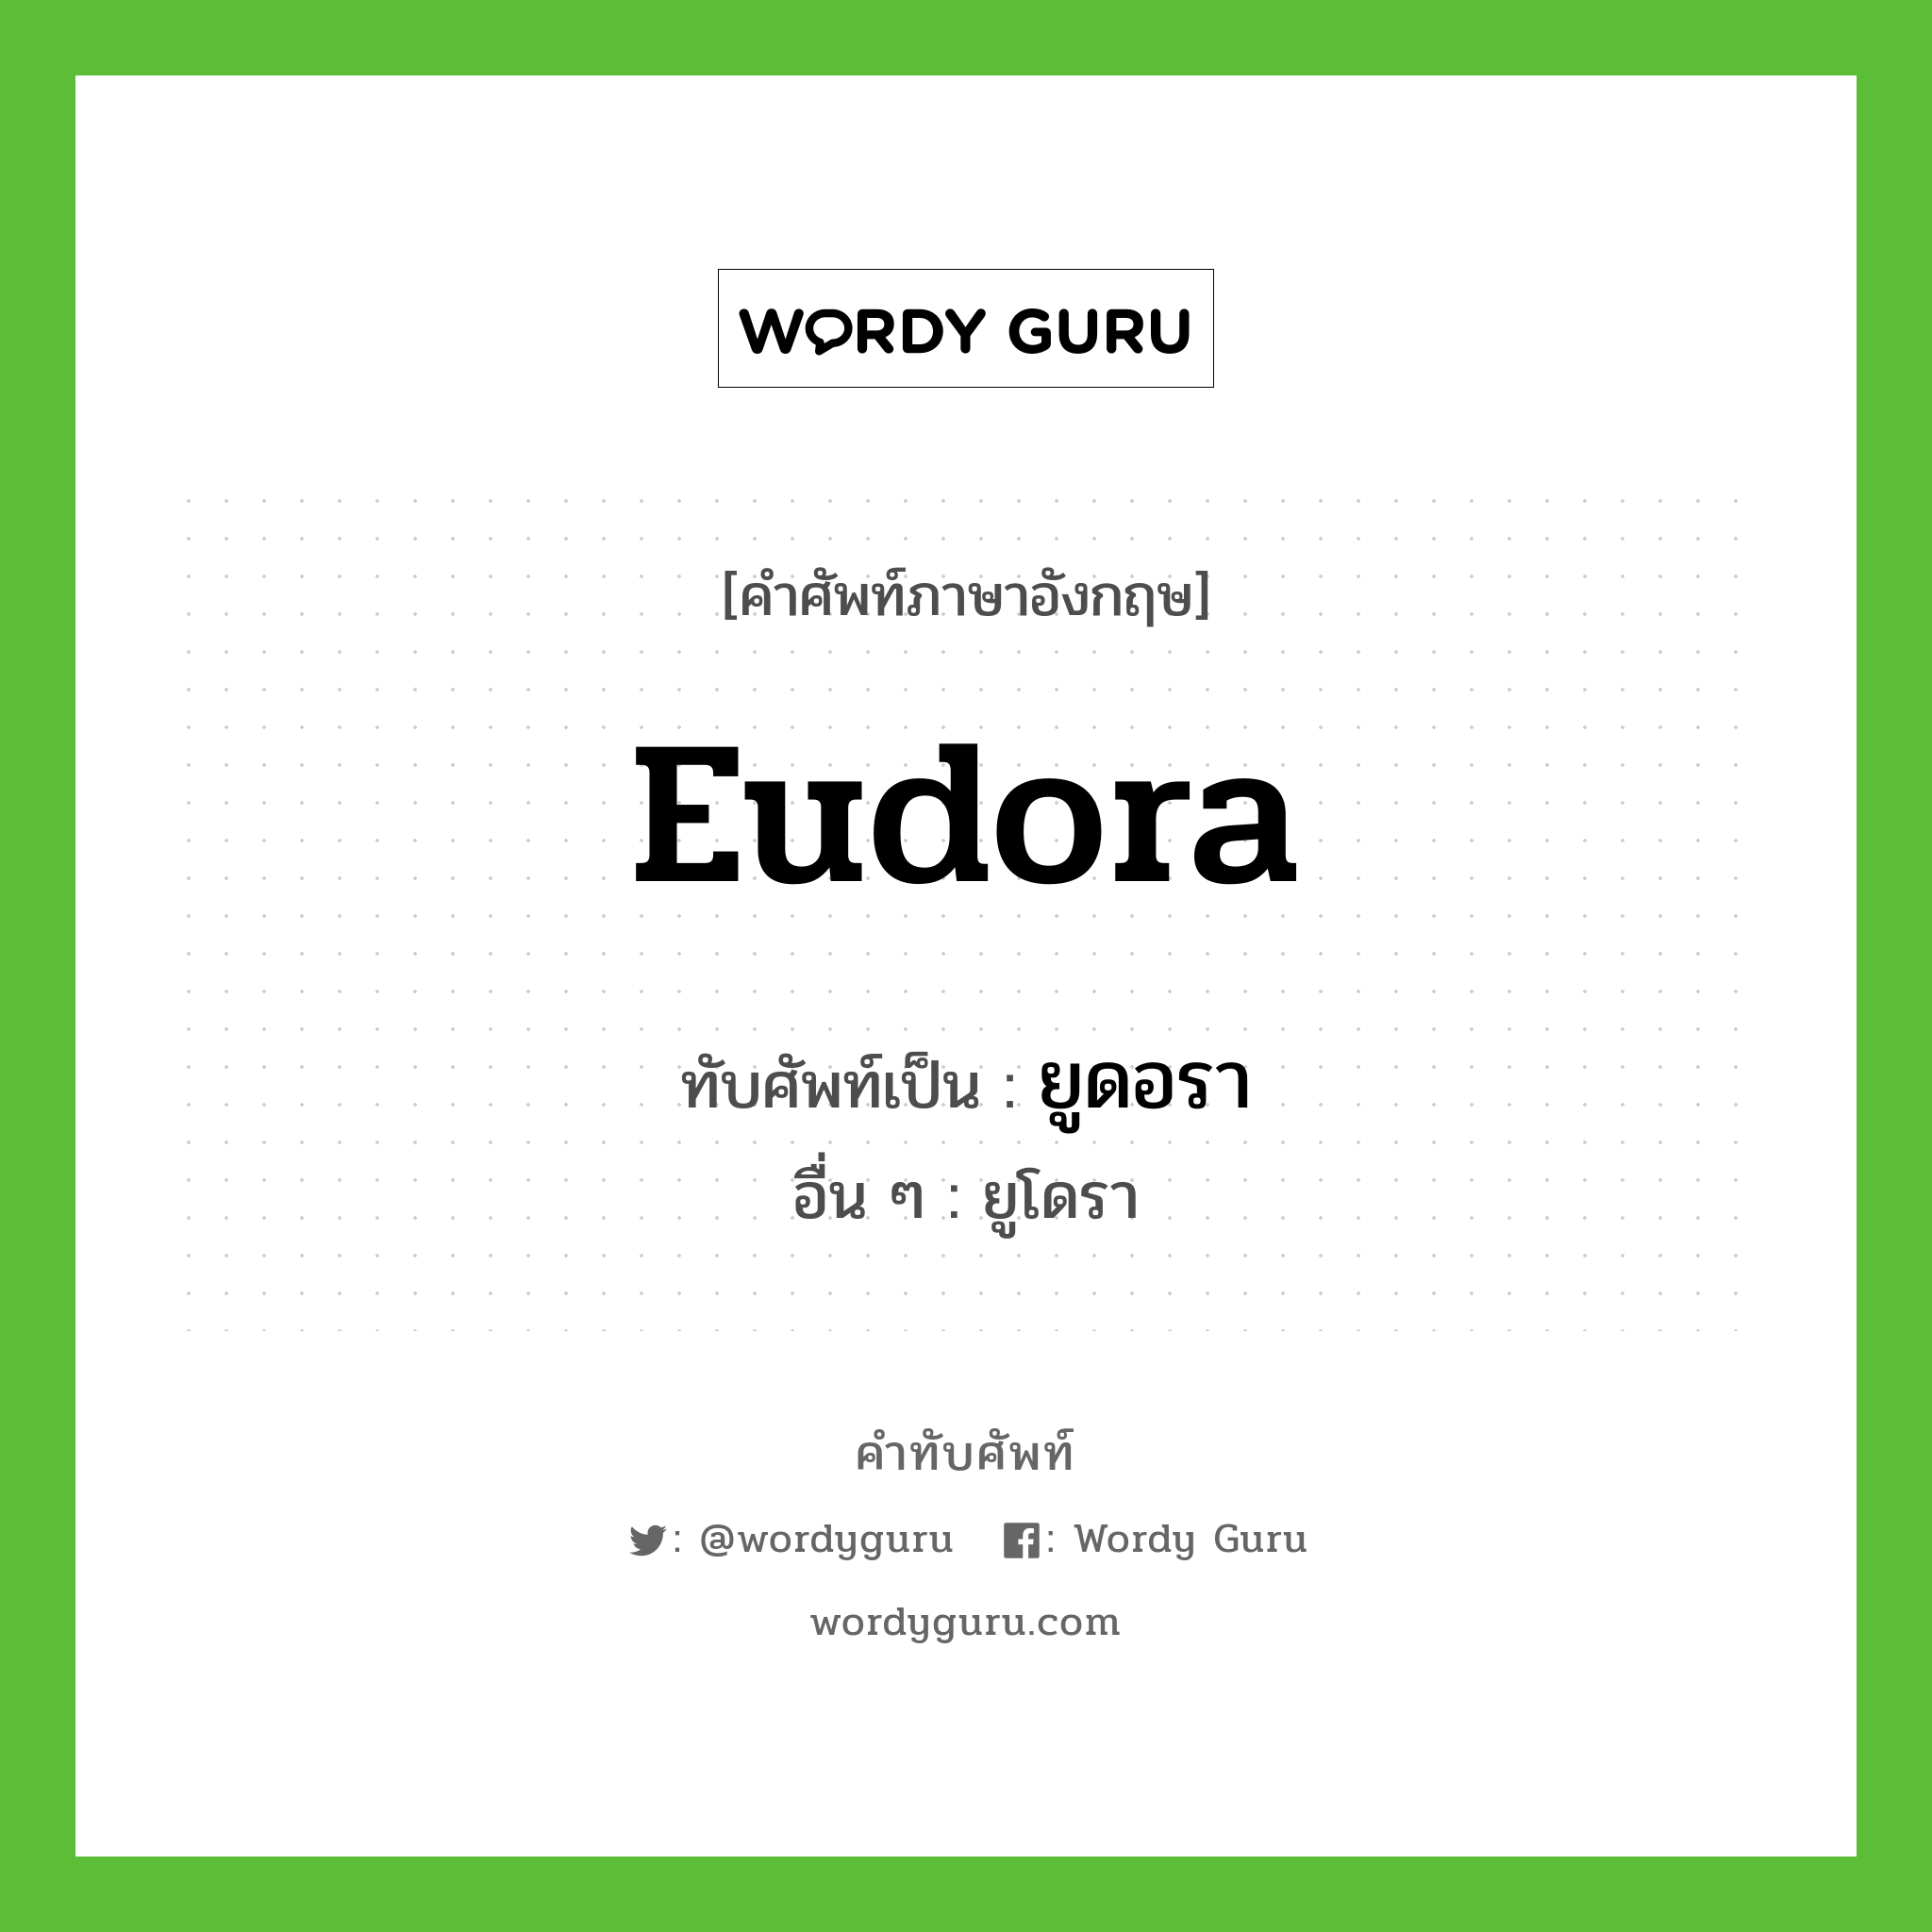 Eudora เขียนเป็นคำไทยว่าอะไร?, คำศัพท์ภาษาอังกฤษ Eudora ทับศัพท์เป็น ยูดอรา อื่น ๆ ยูโดรา